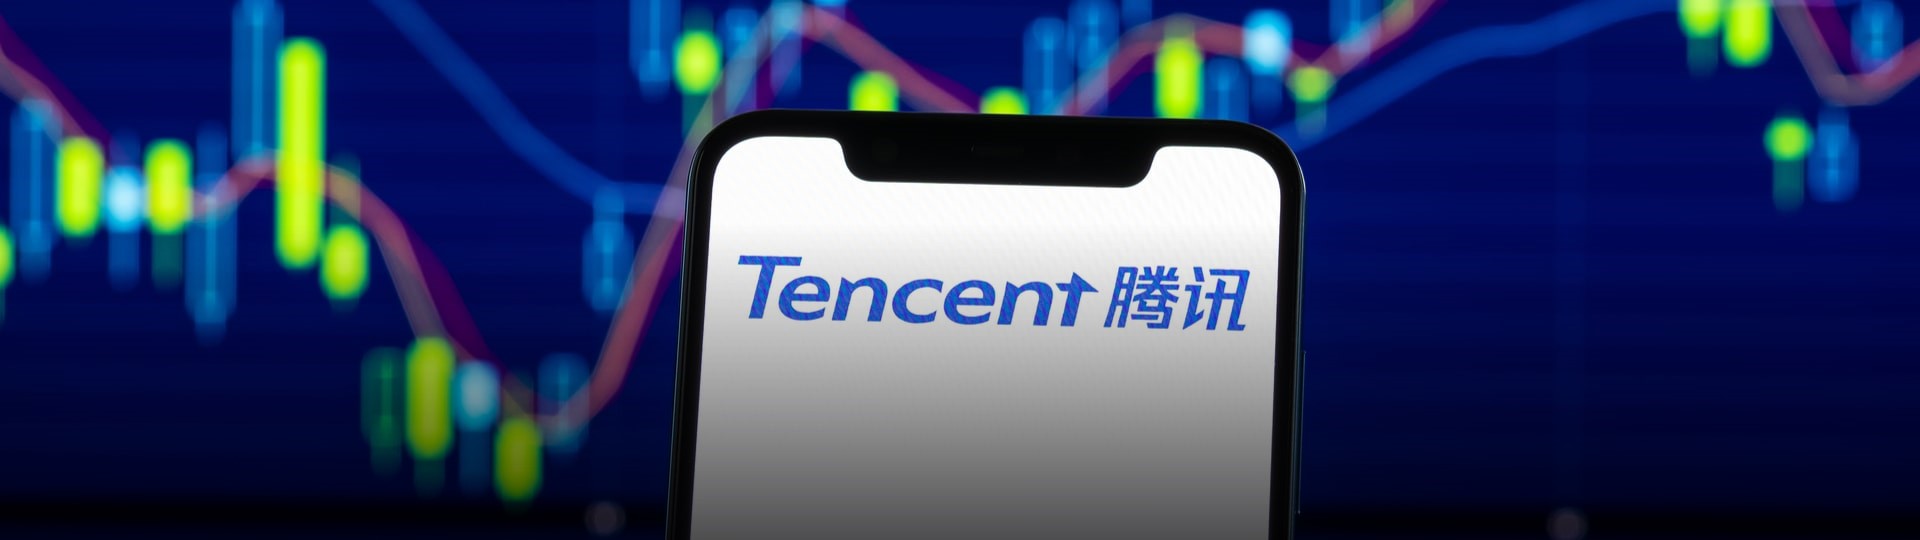 Čínské firmě Tencent vzrostl za čtvrtletí čistý zisk o 29 procent